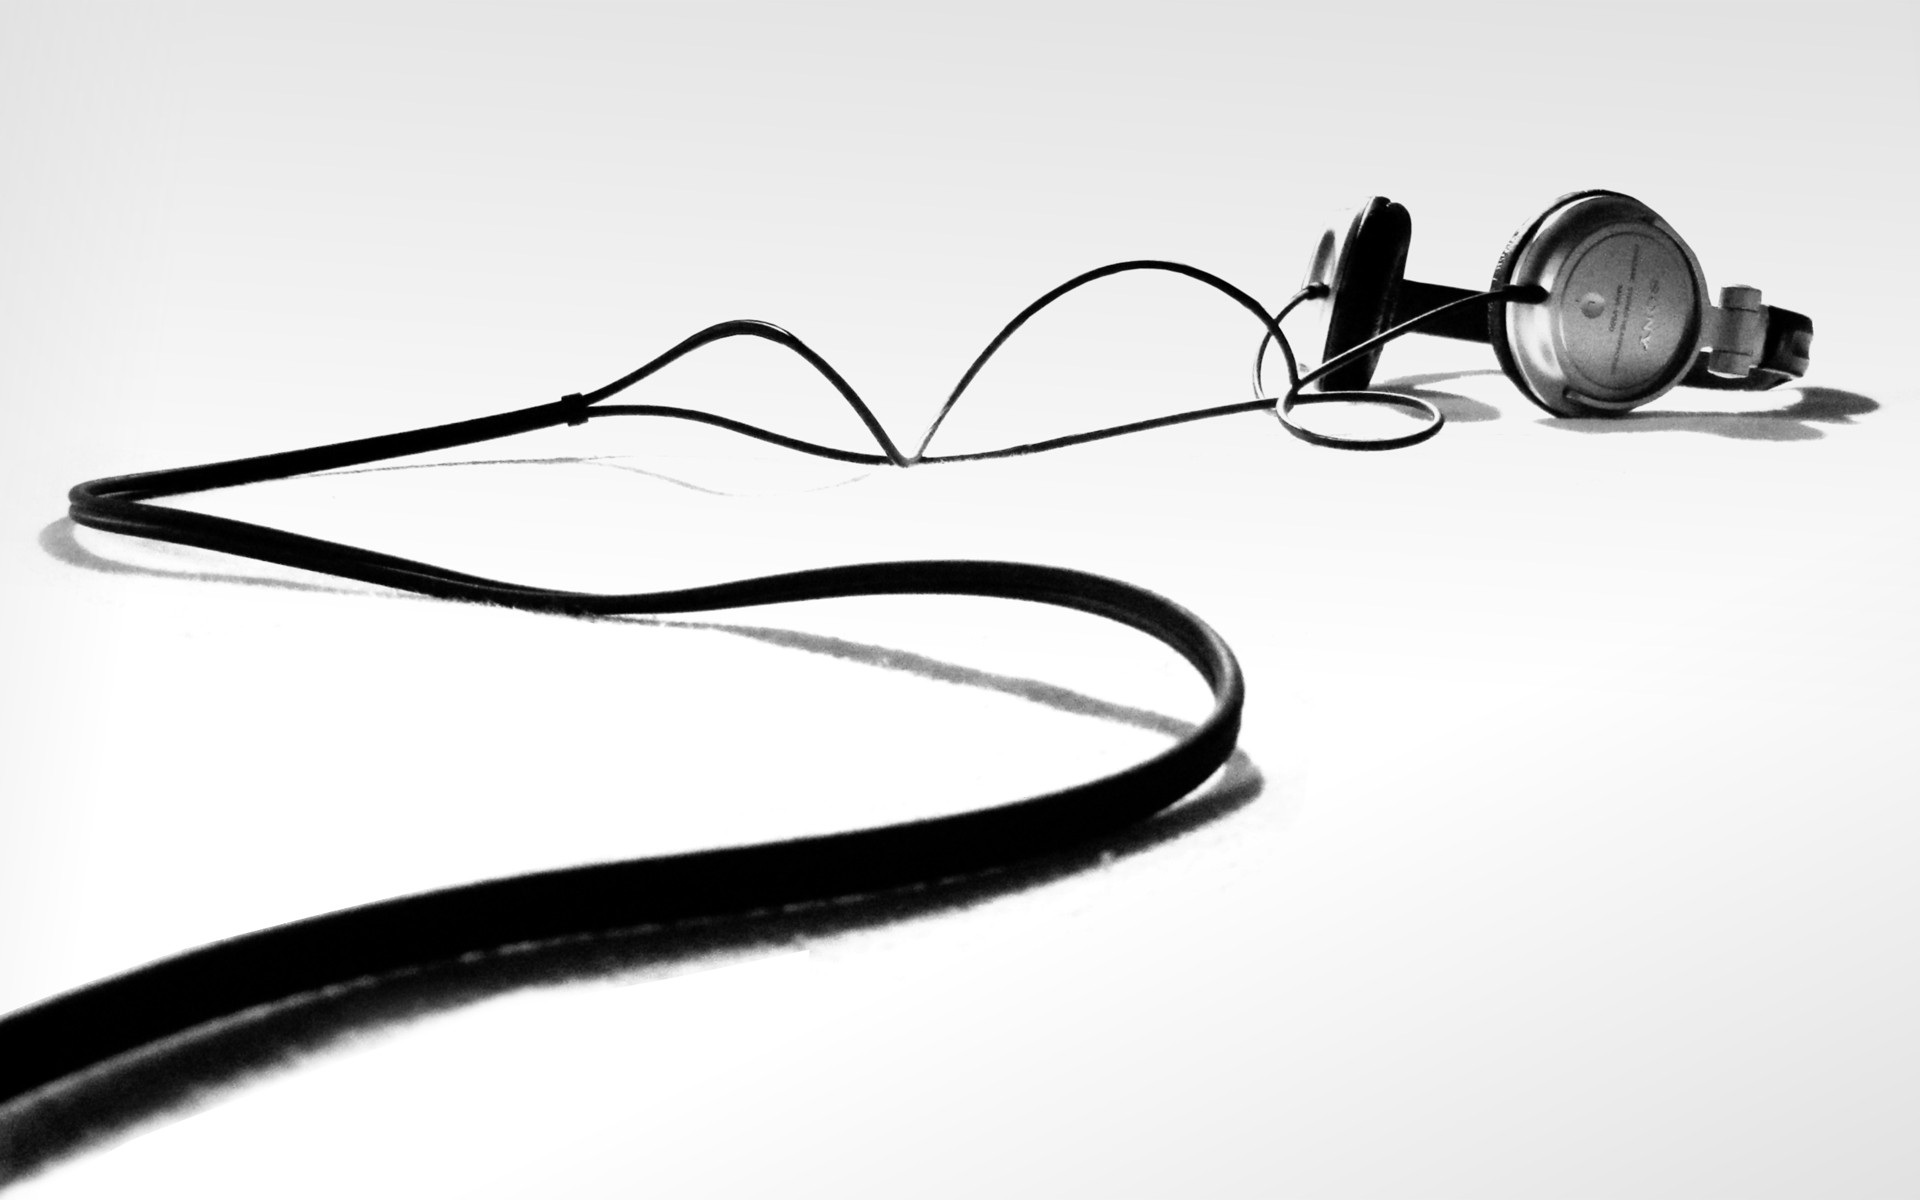 sony-sound-master-headphones-widescreen-full-hd-wallpaper-download-headphones-images.jpg